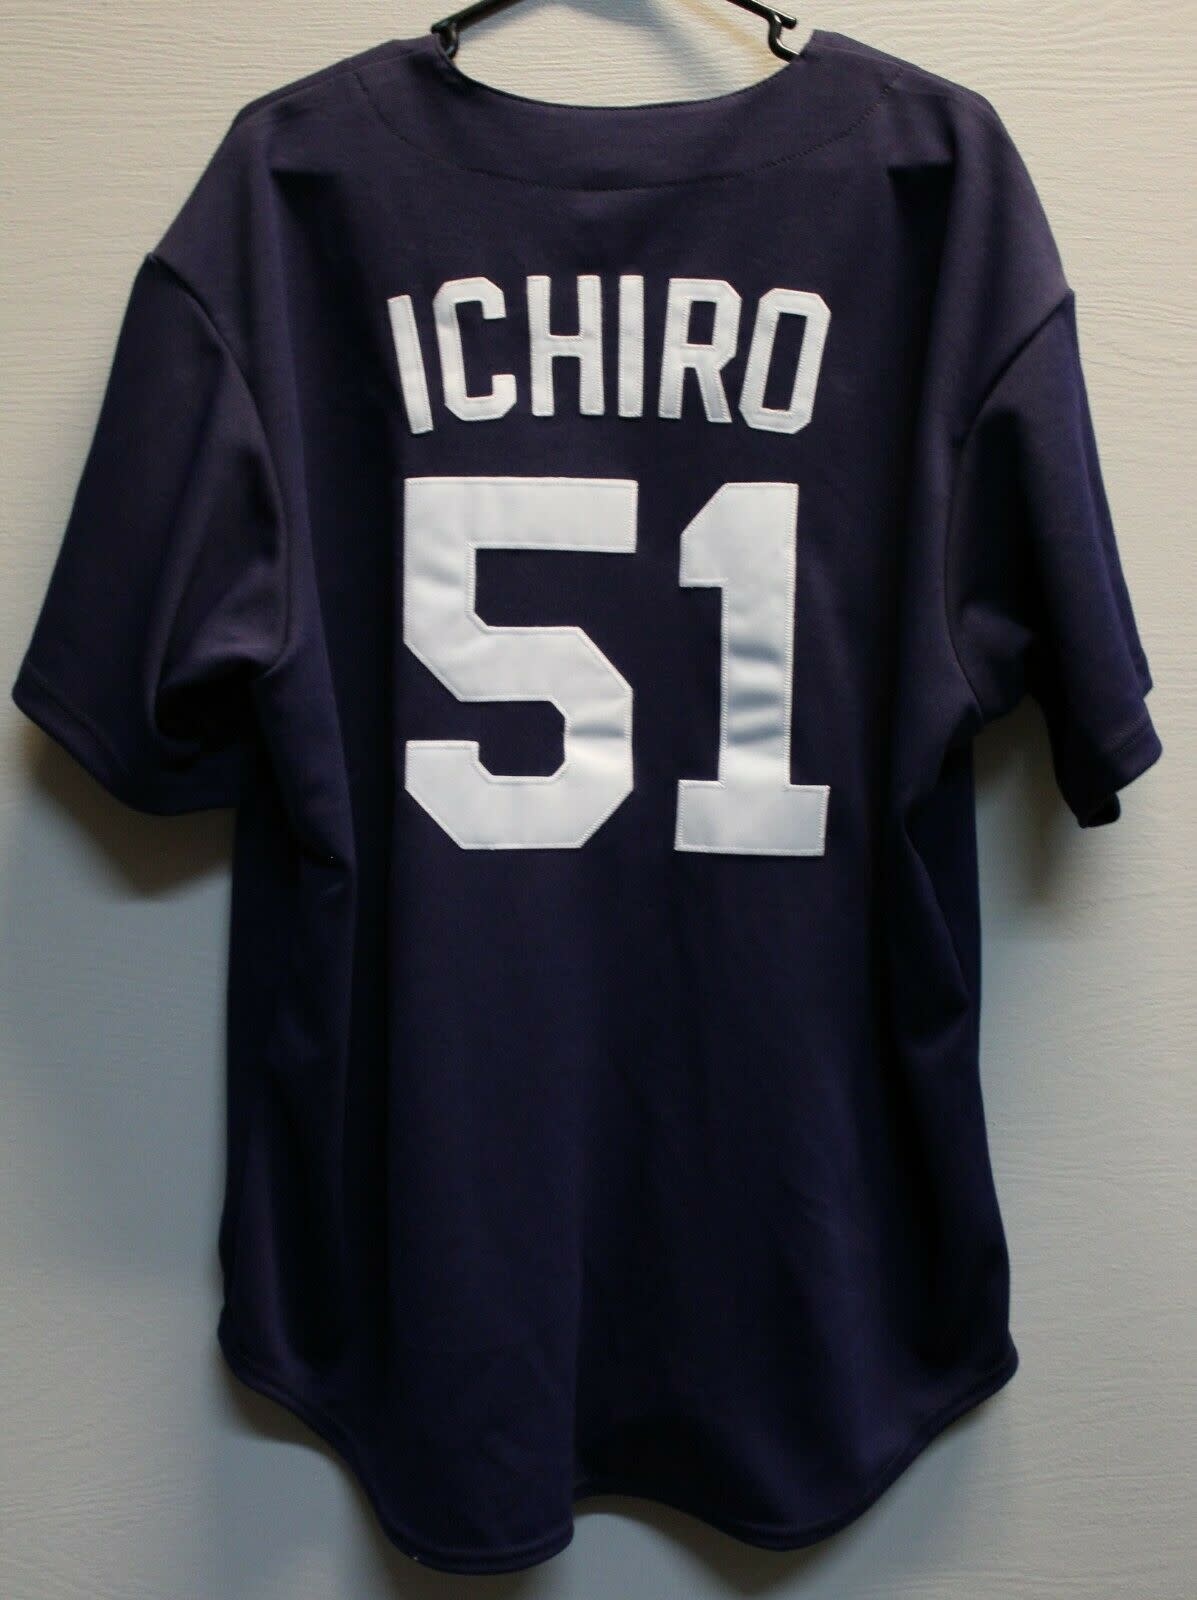 ichiro suzuki shirt